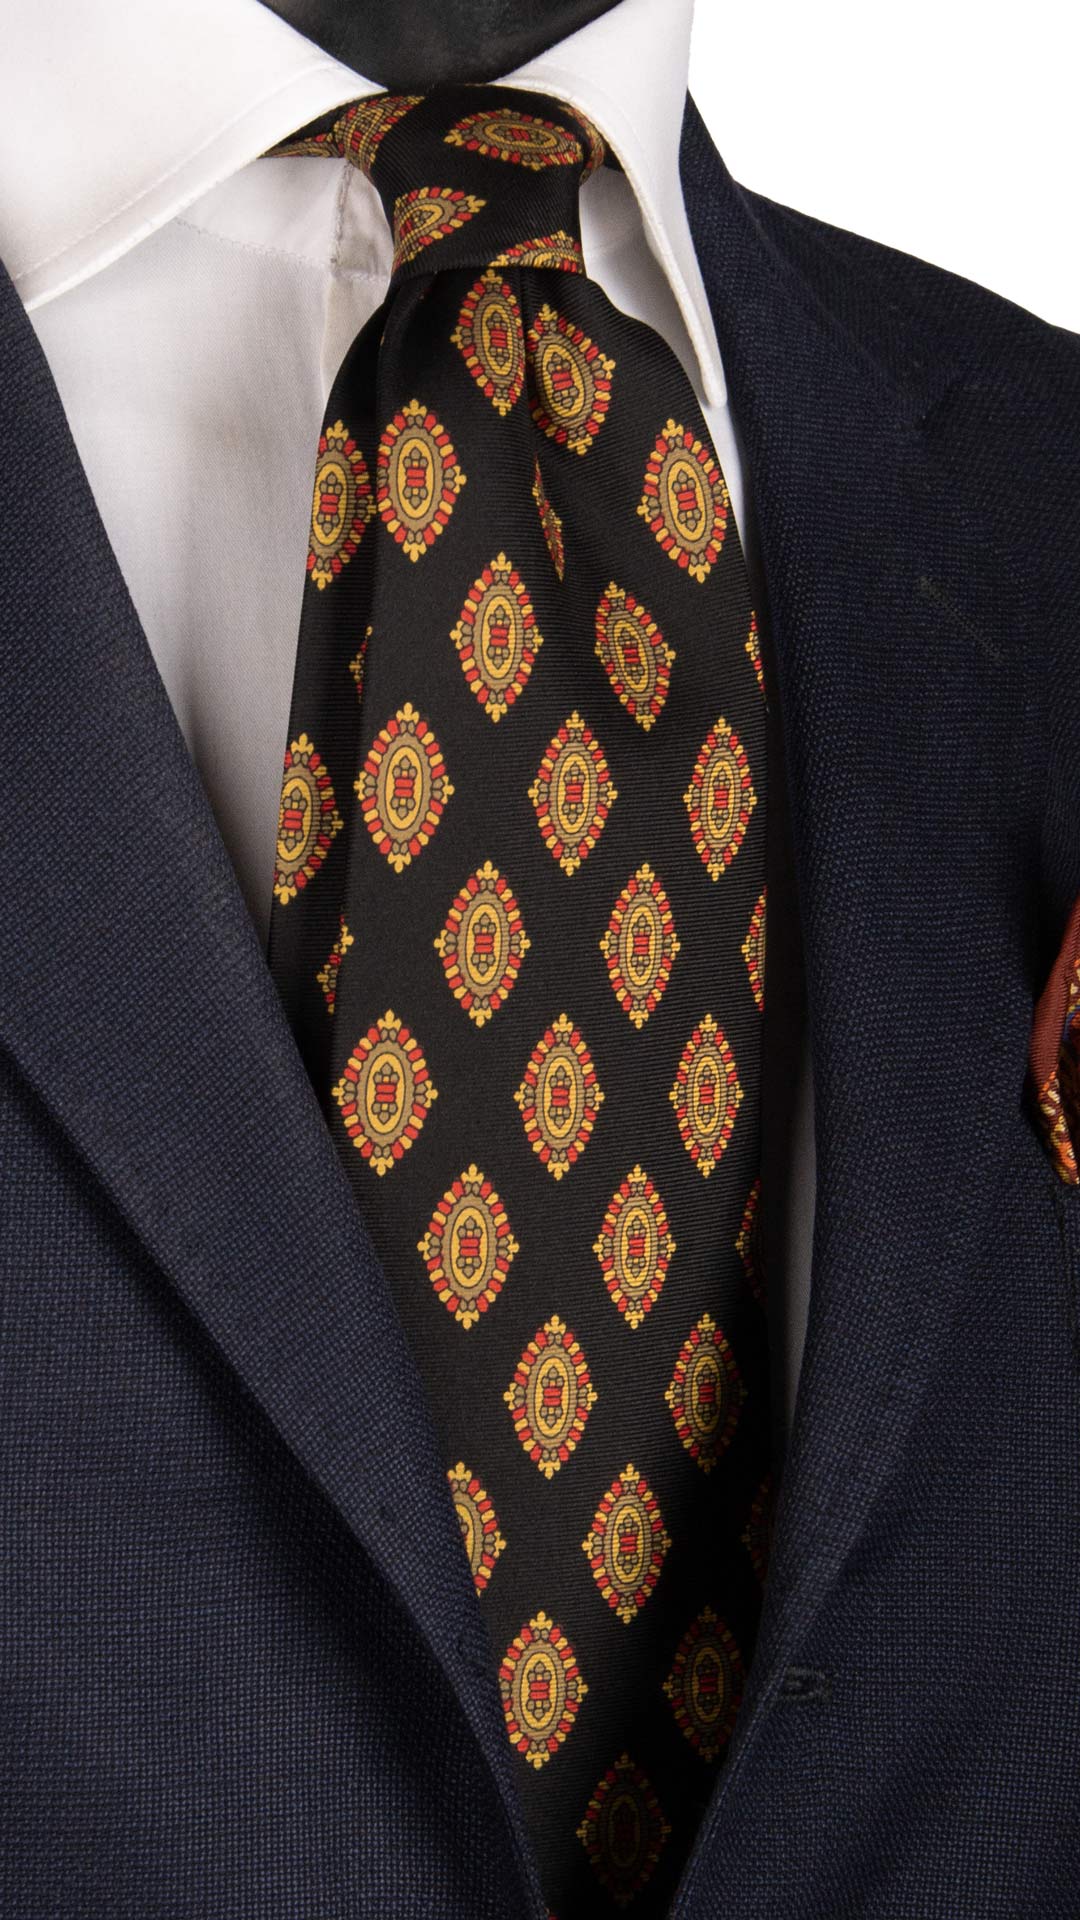 Cravatta Vintage in Twill di Seta Nera Fantasia Magenta Giallo Oro CV823 made in Italy Graffeo Cravatte